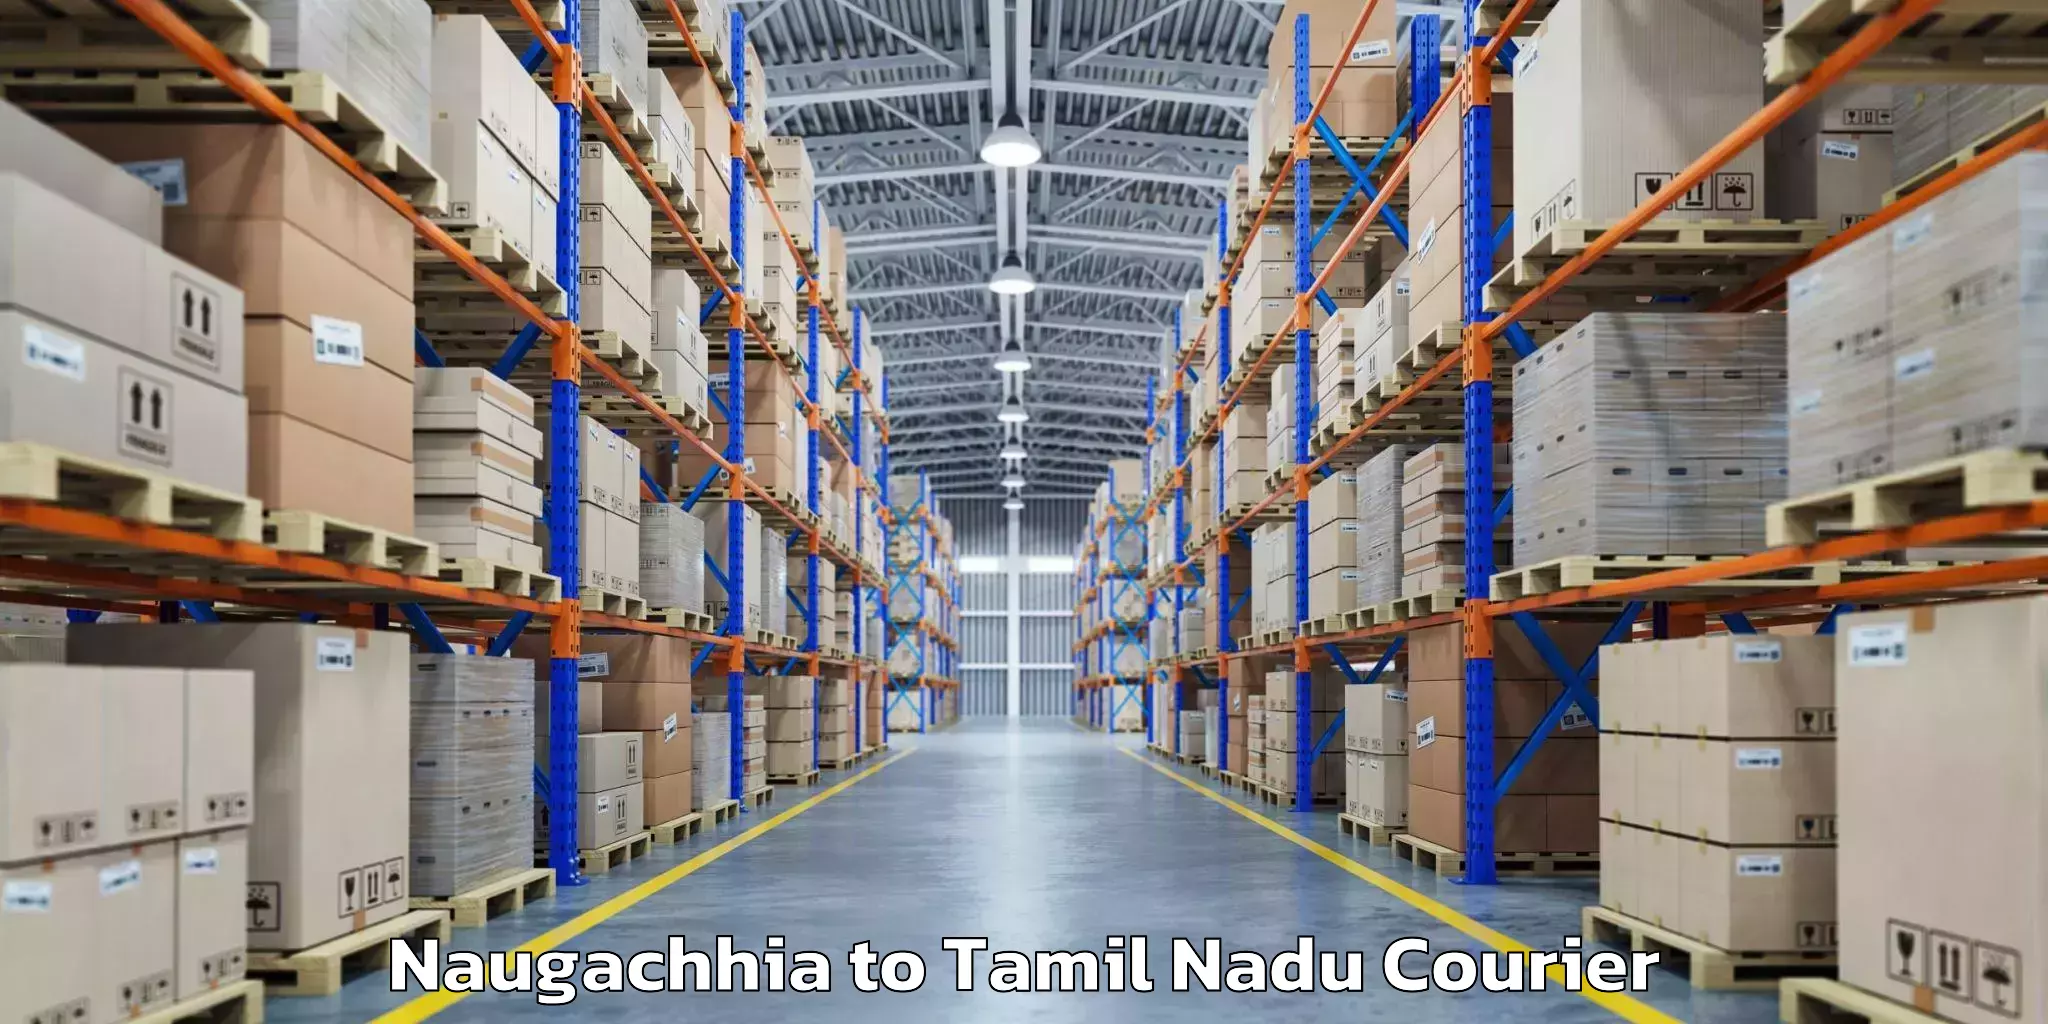 Baggage courier strategy Naugachhia to Chennai Port